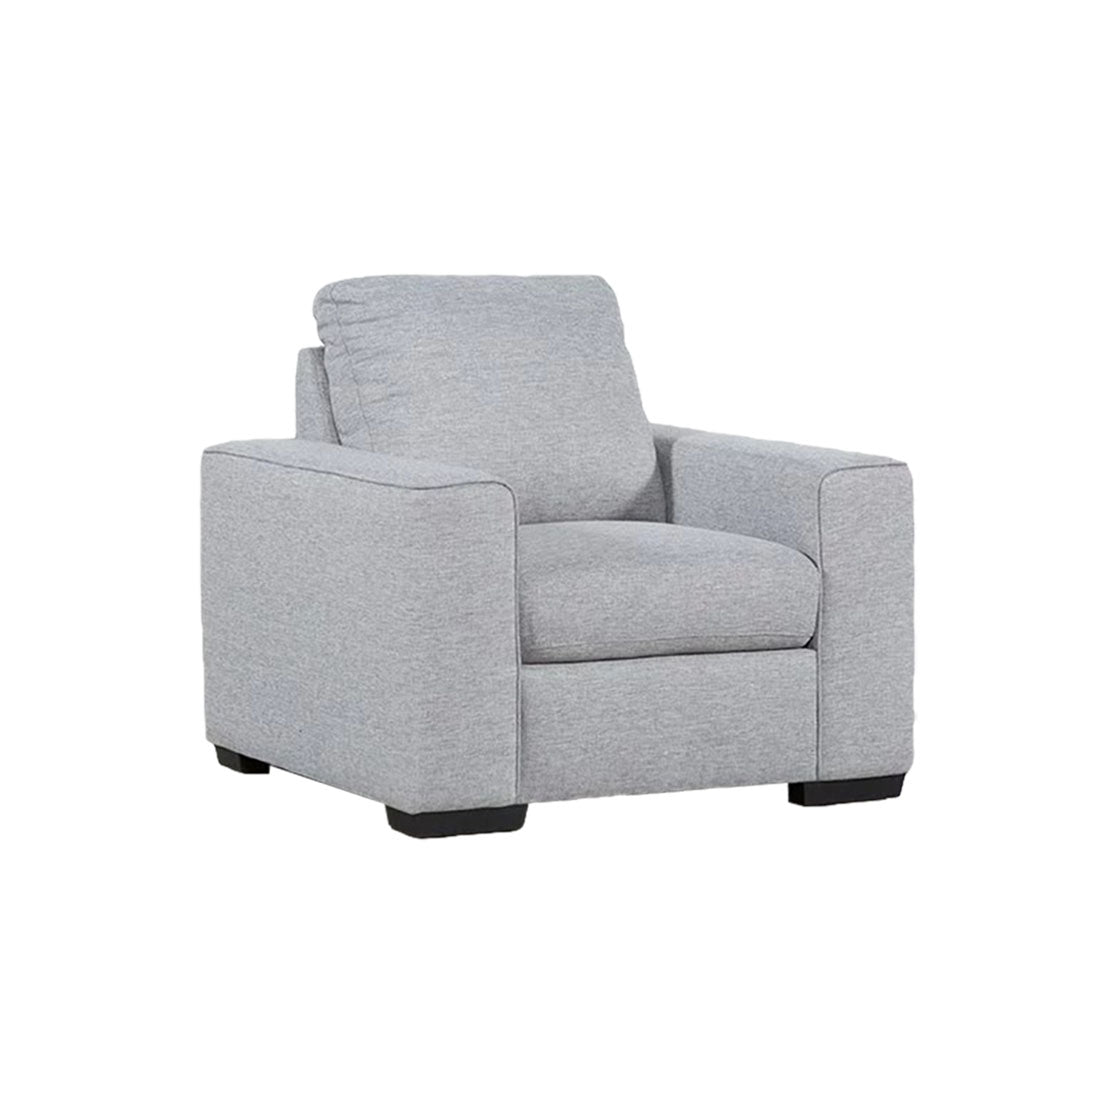 Dane Fabric Sofa for Living Room